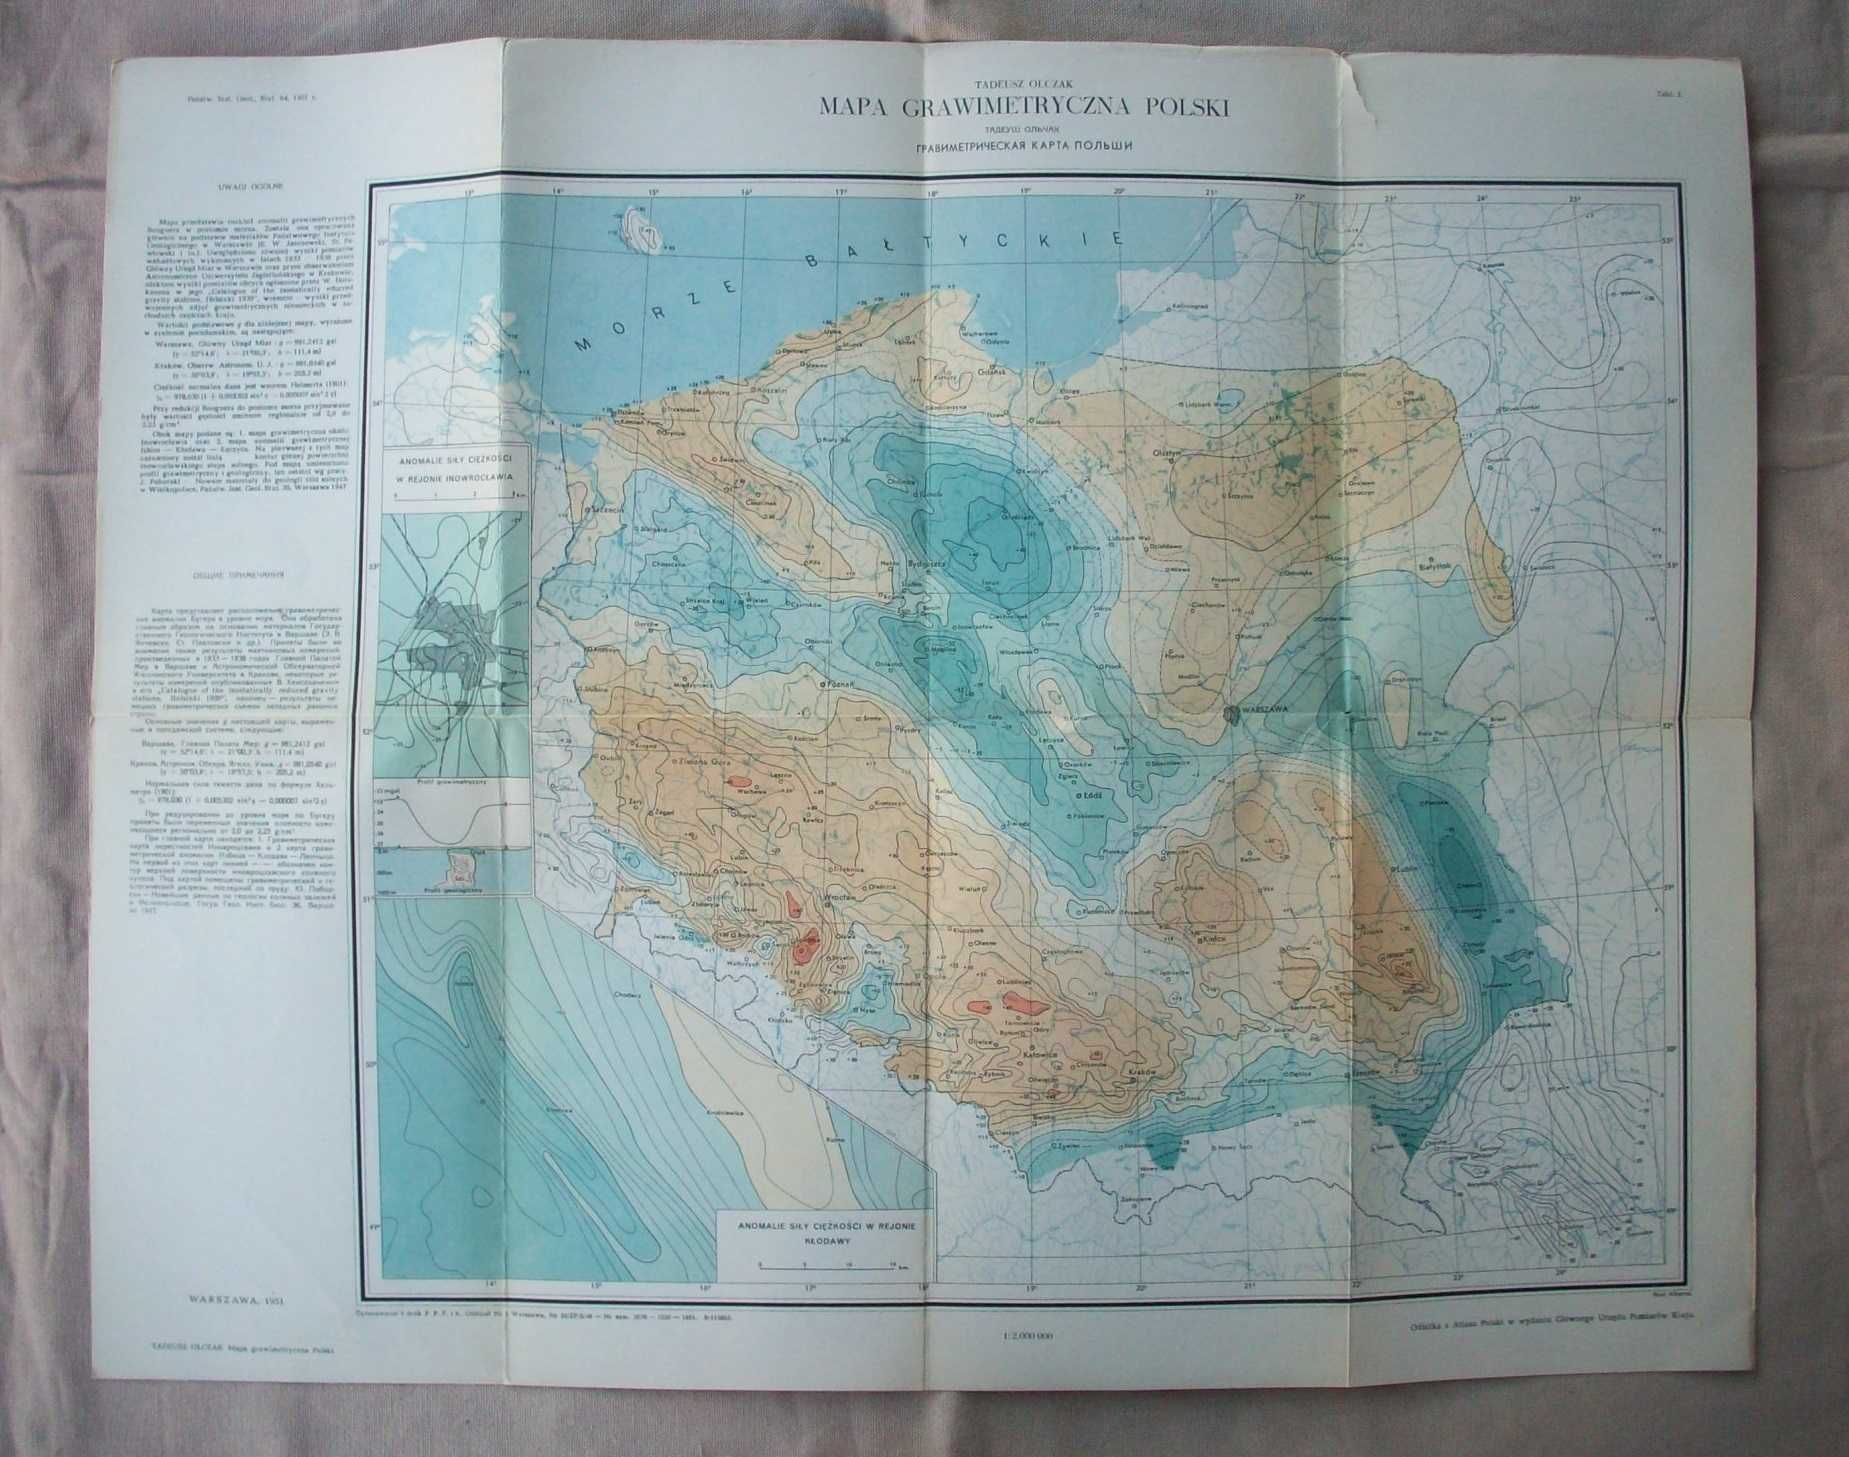 Mapa grawimetryczna Polski, T.Olczak, 1951.